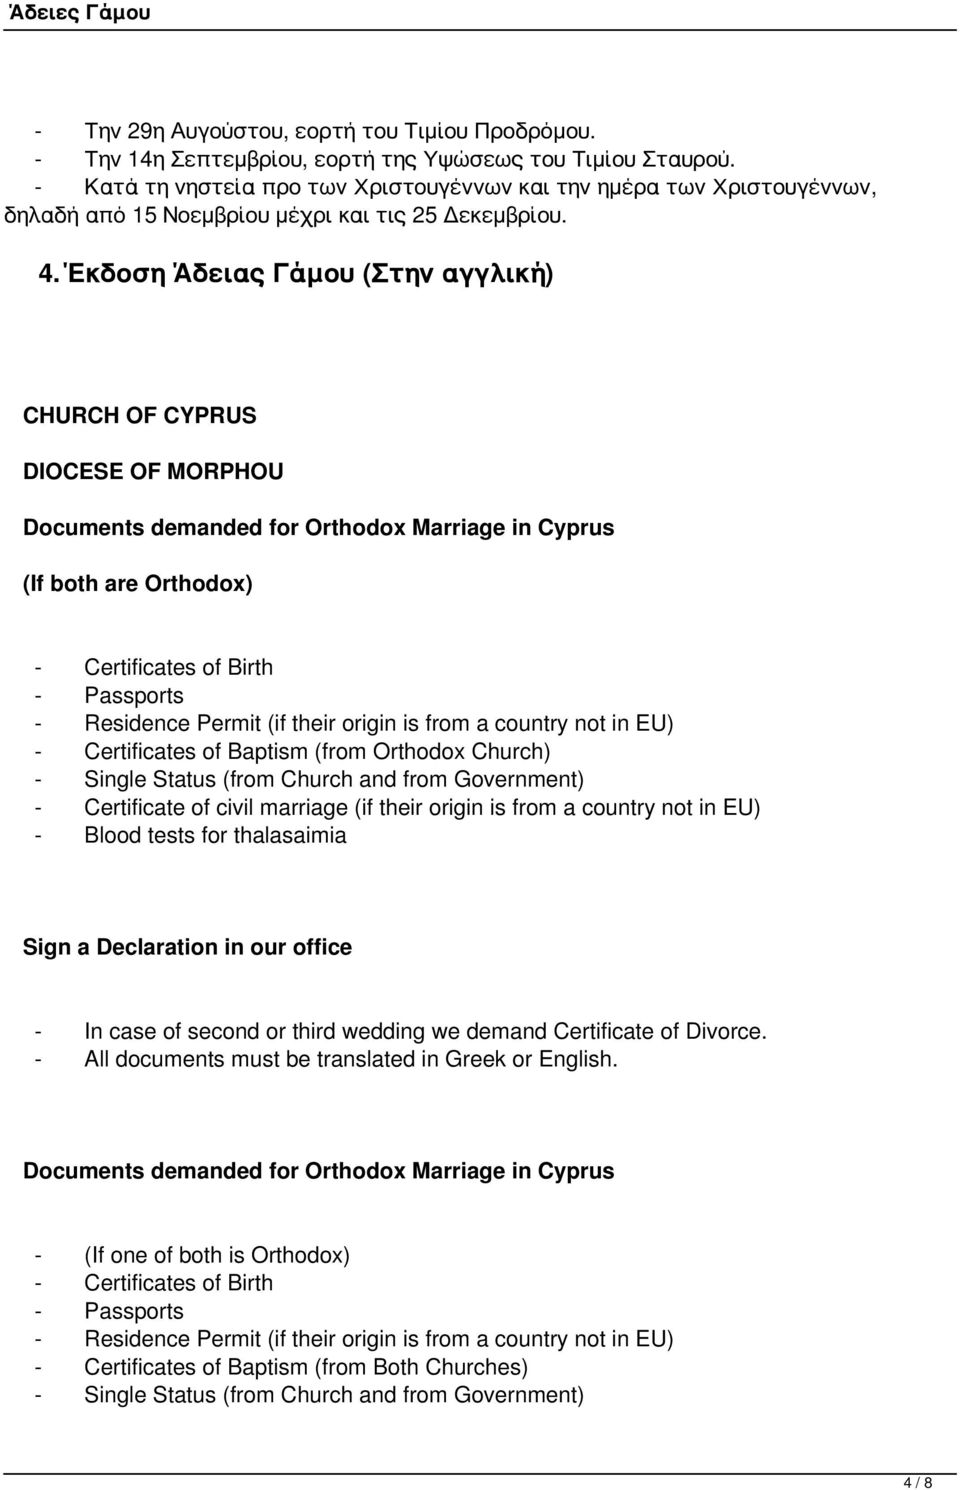 Έκδοση Άδειας Γάμου (Στην αγγλική) CHURCH OF CYPRUS DIOCESE OF MORPHOU Documents demanded for Orthodox Marriage in Cyprus (If both are Orthodox) - Certificates of Birth - Passports - Residence Permit